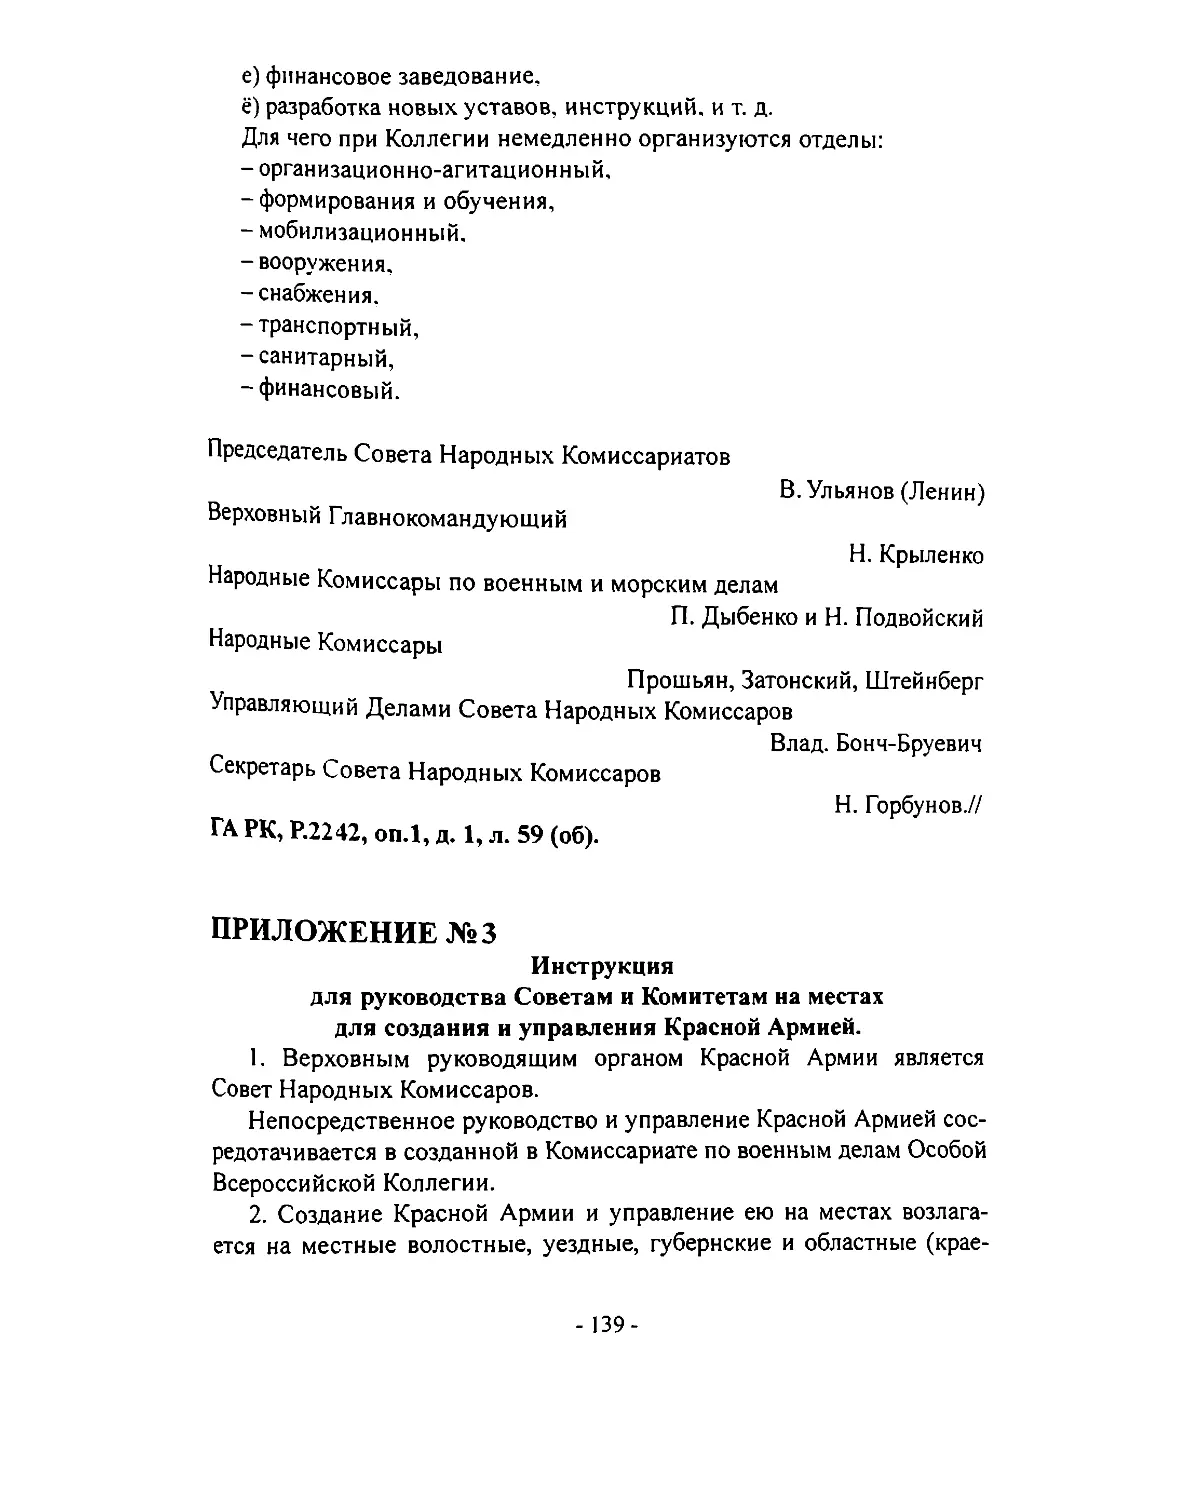 № 3. Инструкция для руководства Советам и Комитетам на местах для создания и управления Красной Армией